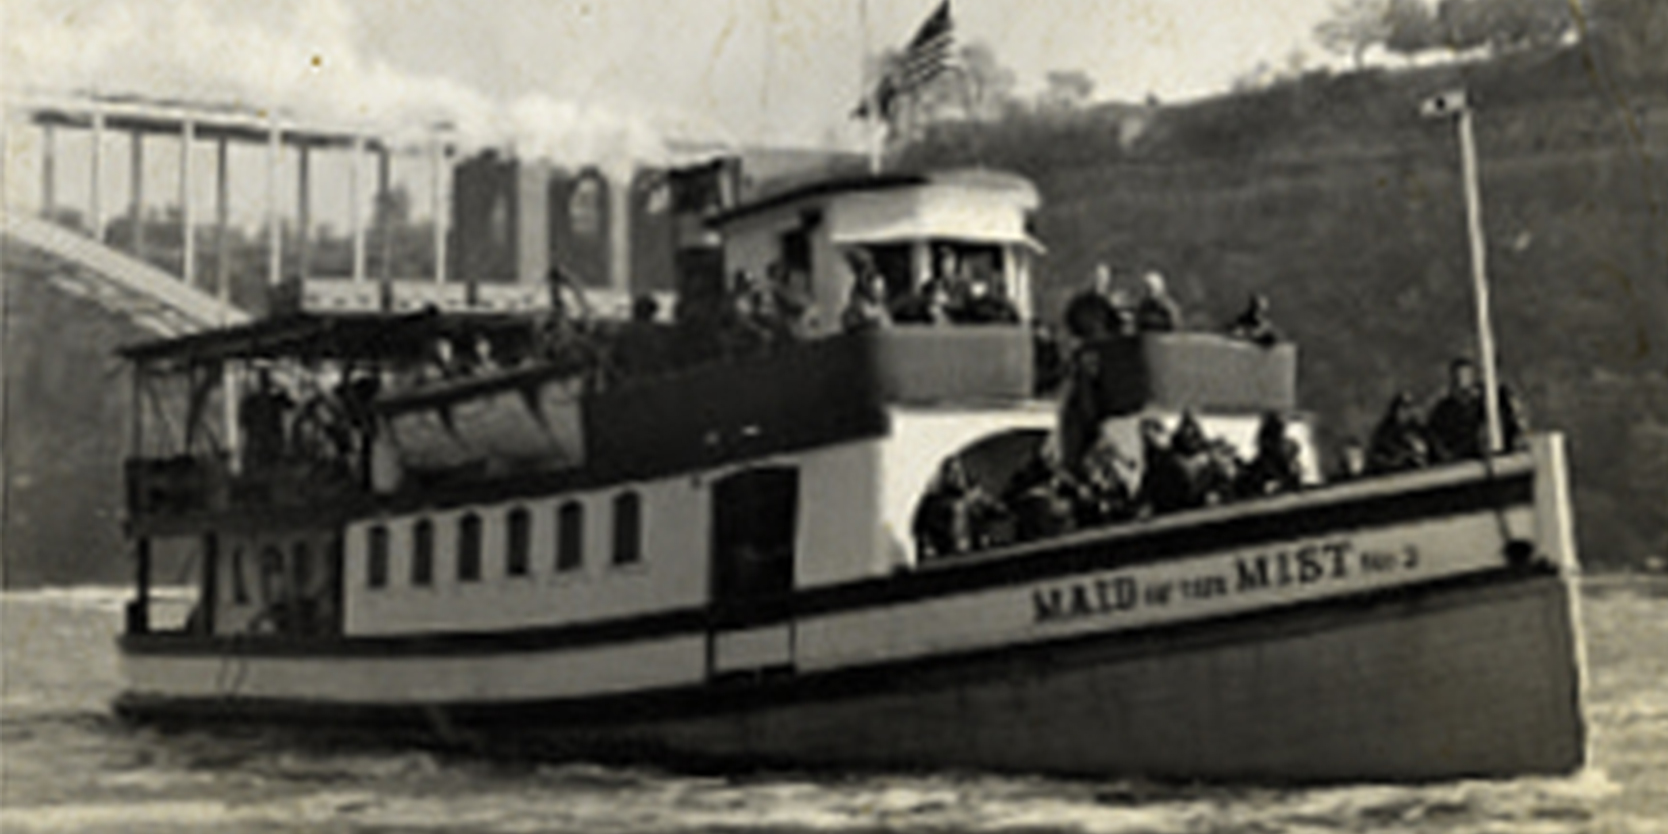 Vintage Maid of the Mist bateau